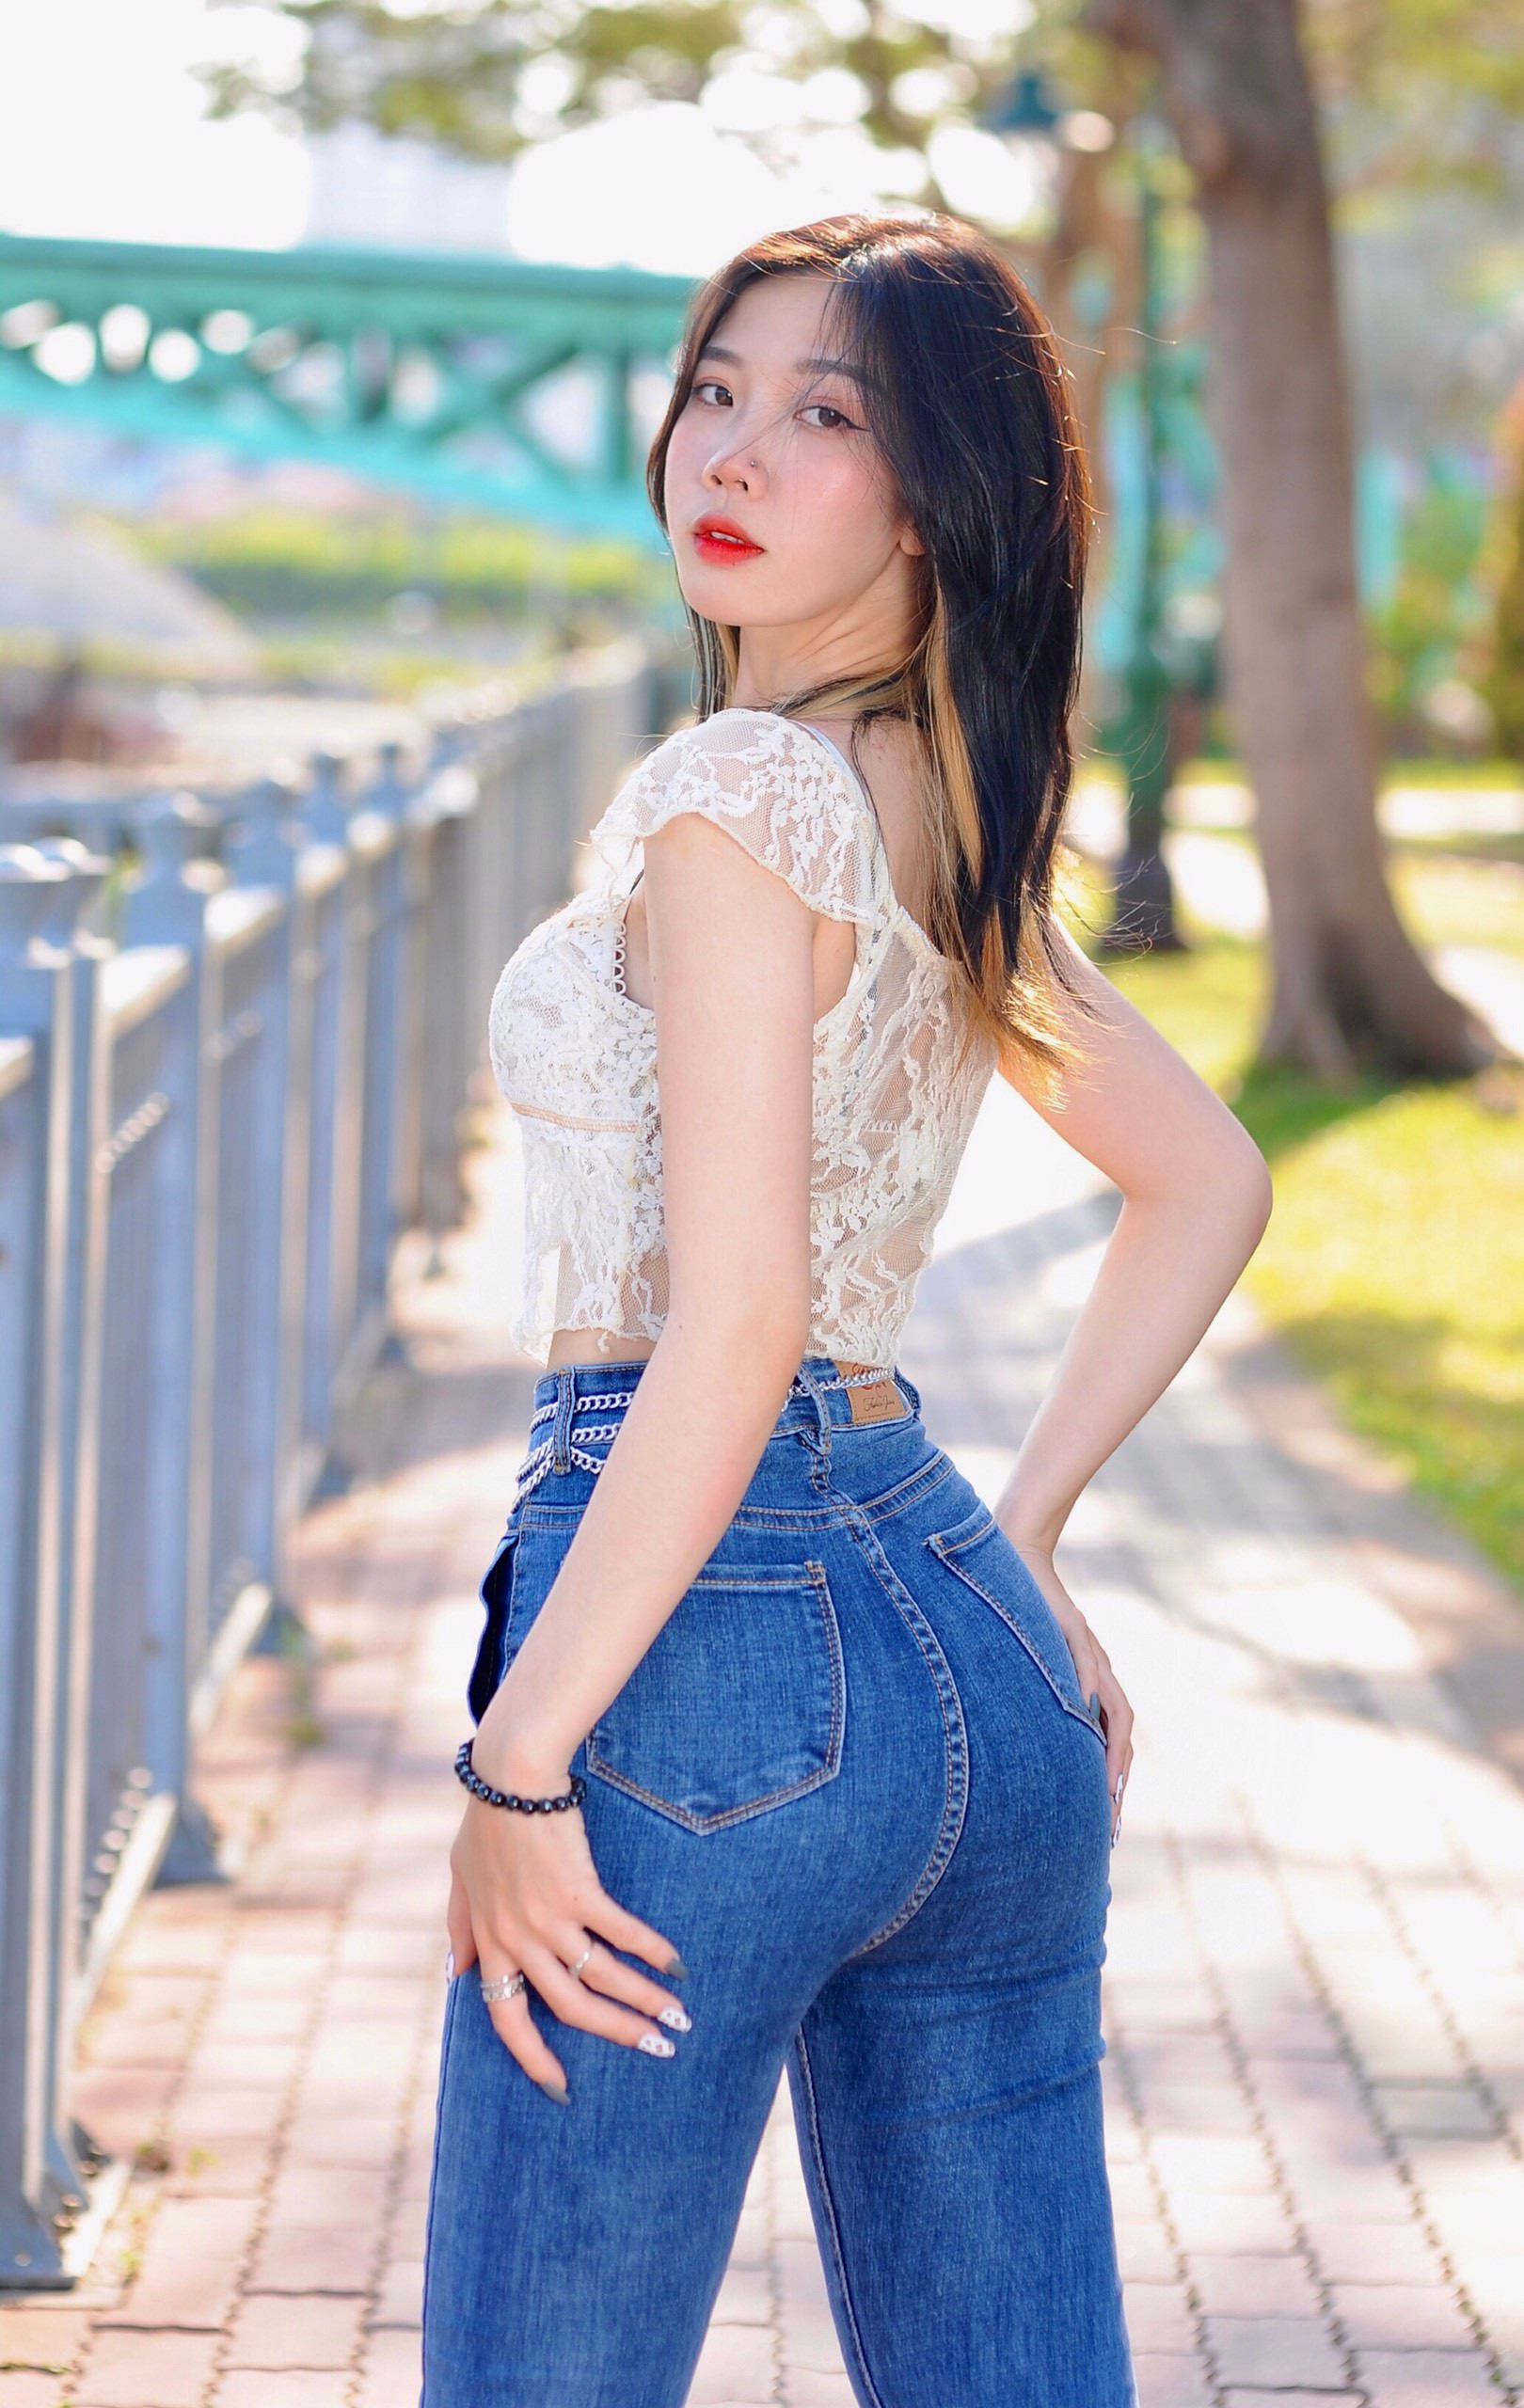 Hot girl Đồng Nai diện đồ gợi cảm, khoe khéo vóc dáng chuẩn đẹp - 6